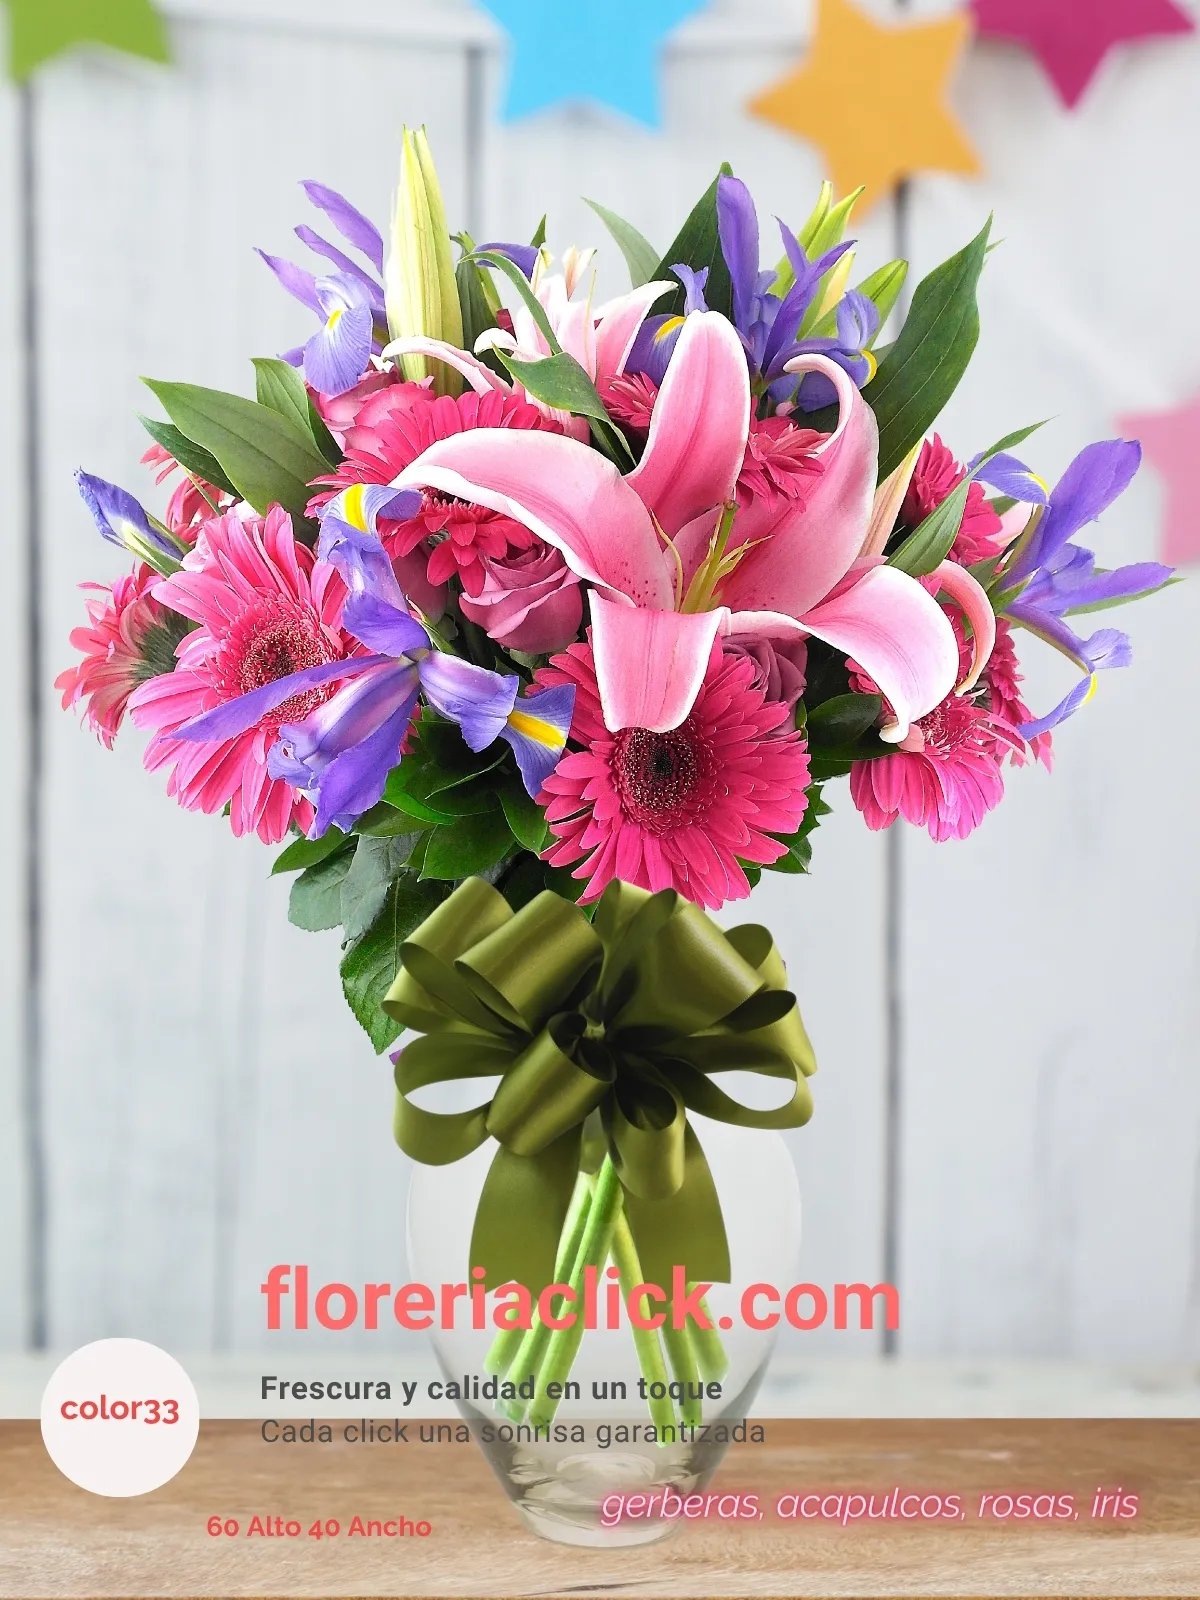 Arreglo floral de 43 flores frescas en armonía de colores